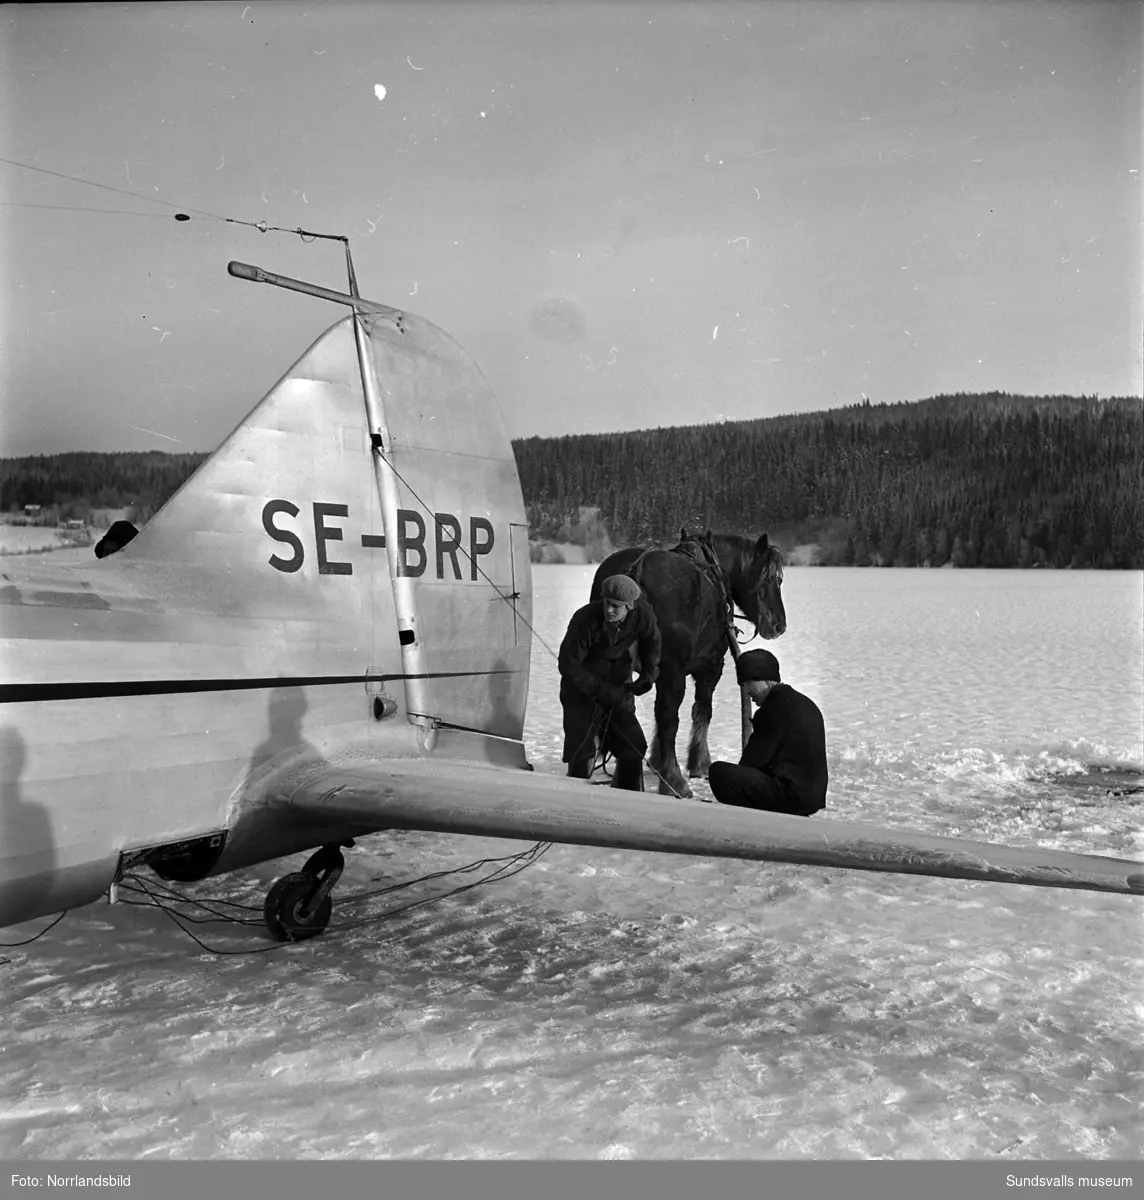 En måndagseftermiddag i början av december 1950 gjorde kapten Torwald Andersson en perfekt landning på Långsjöns is i Tuna med en last av färska kvällstidningar. Direkt efter landningen brast isen och det lilla planet blev liggande med vatten upp till propellrarna. Bärgningsarbetet blev besvärligt, ett par dagar efter incidenten lyckades man till slut få upp planet ur vattnet med hjälp av såväl modern teknik, i form av amerikanska luftkuddar som blåstes upp under vingarna, som gammeldags äkta hästkrafter. Det kvaddade planet fick sedan stå kvar på isen i väntan på att underlaget skulle bli så bärkraftigt att man kunde dra planet in till land för nedmontering och vidare transport till en verkstad.